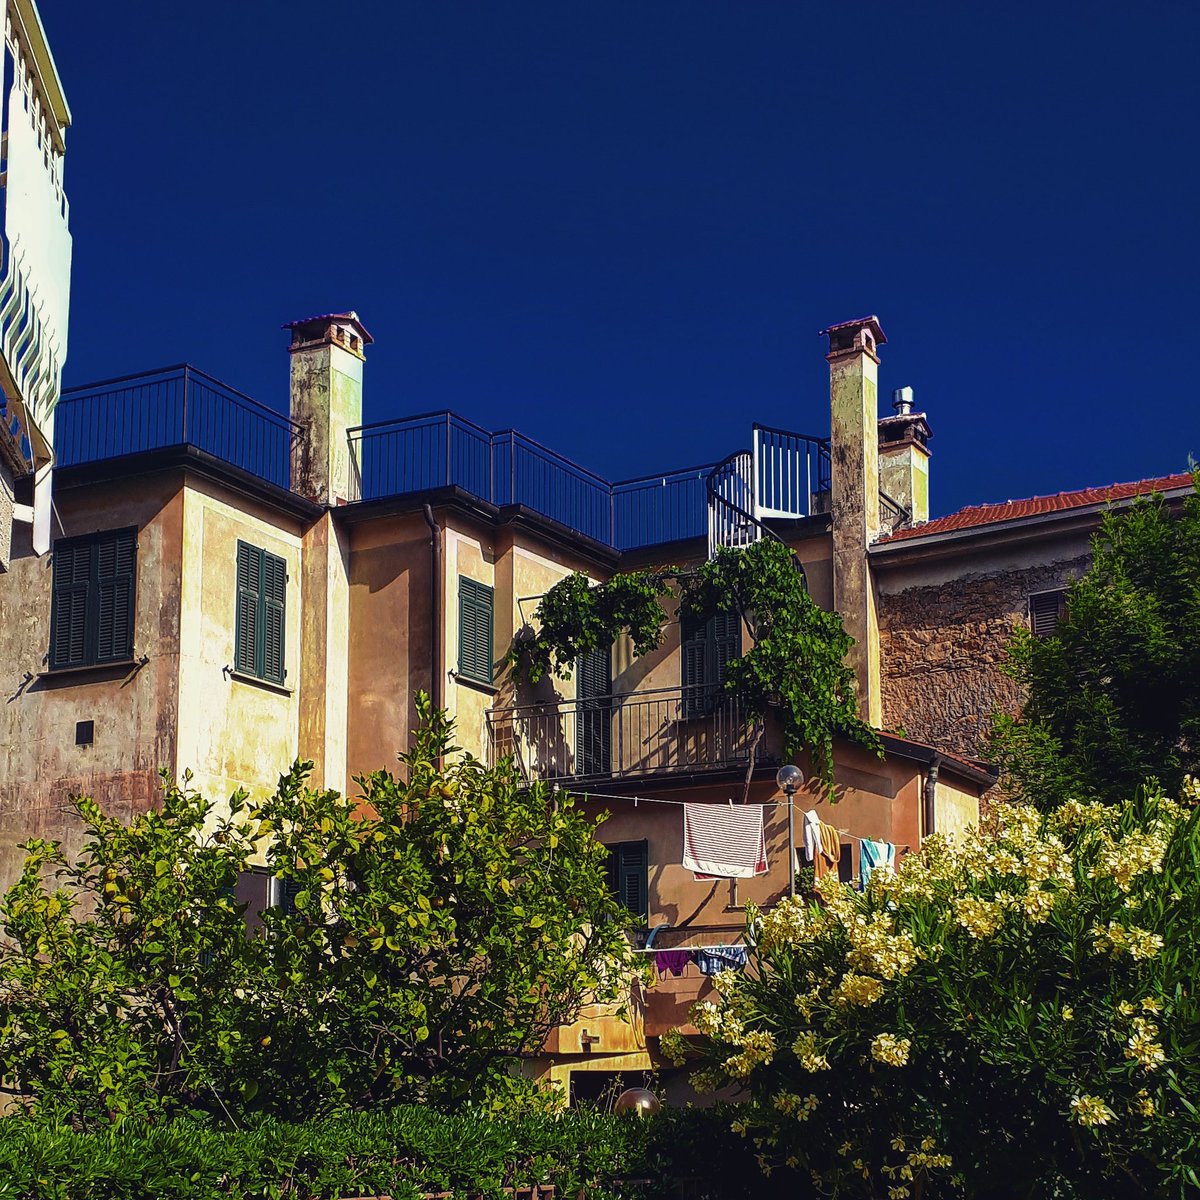 Solarità a #mezzogiorno.
.
#Mediterraneo #Andora #noon #Liguria #igliguria #estate